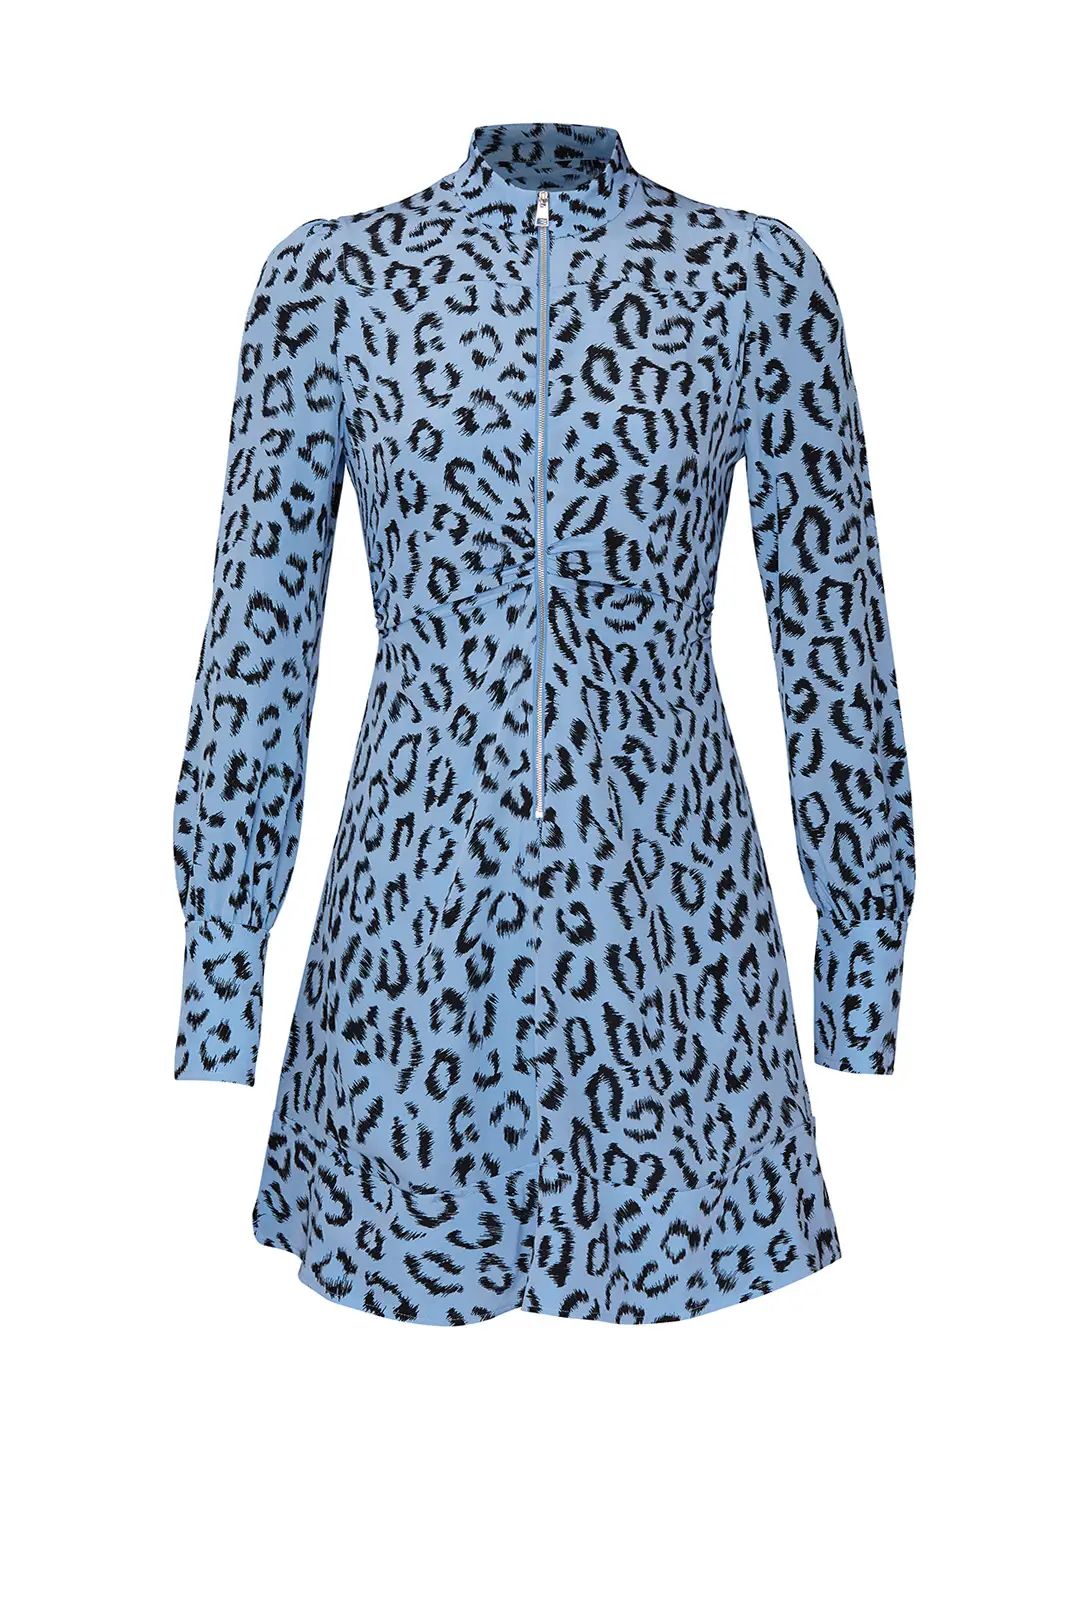 A.L.C. Leopard Marcella Dress | Rent The Runway